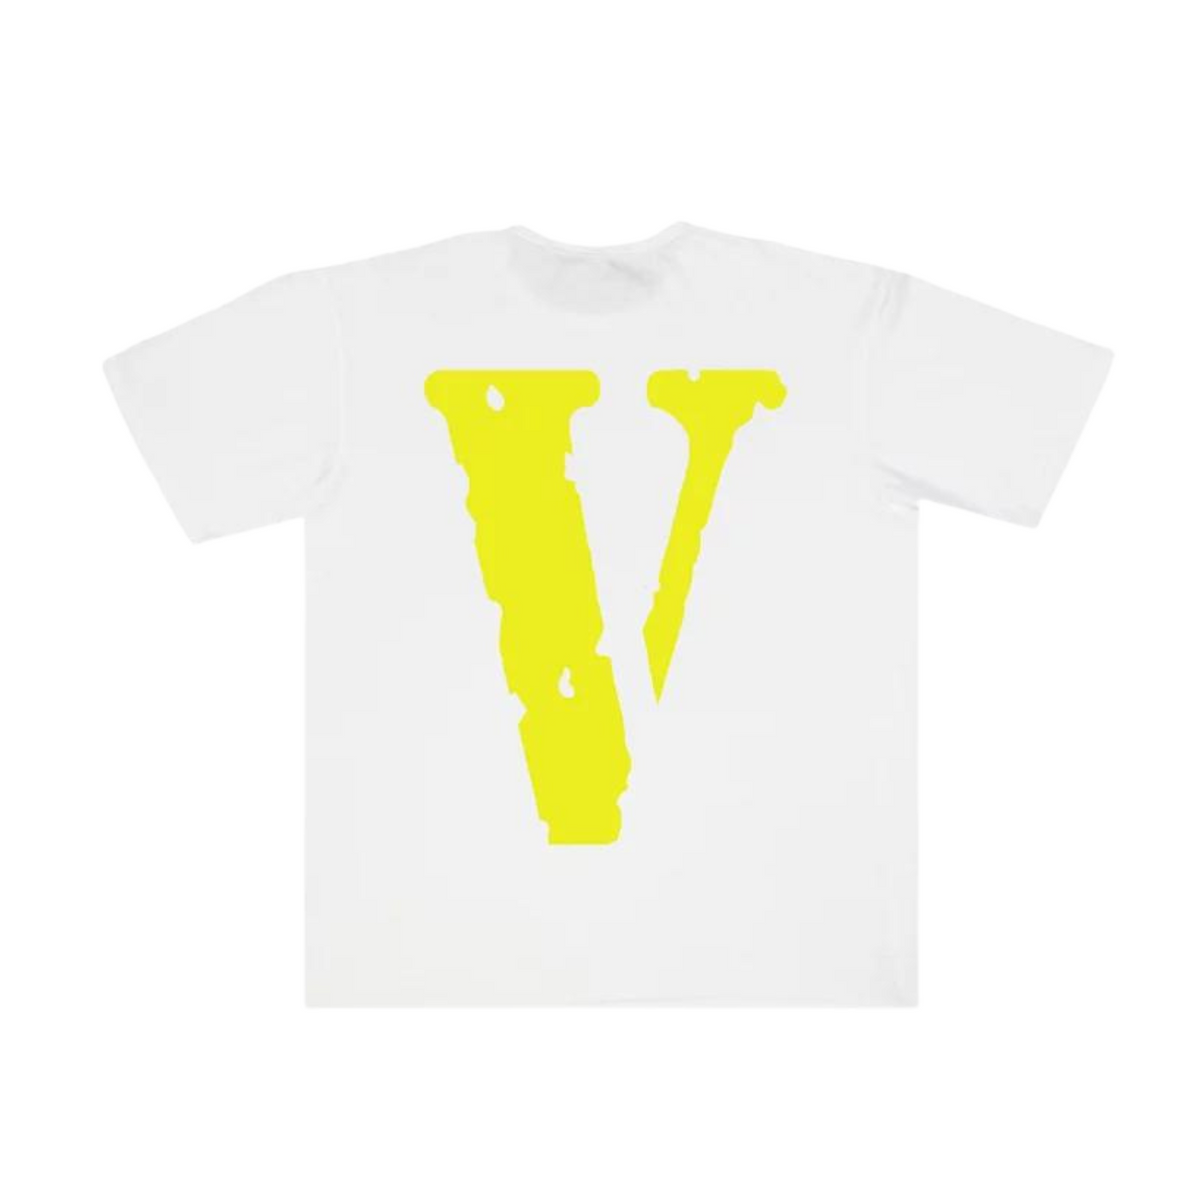 Vlone Staple T-shirt "White/Yellow"